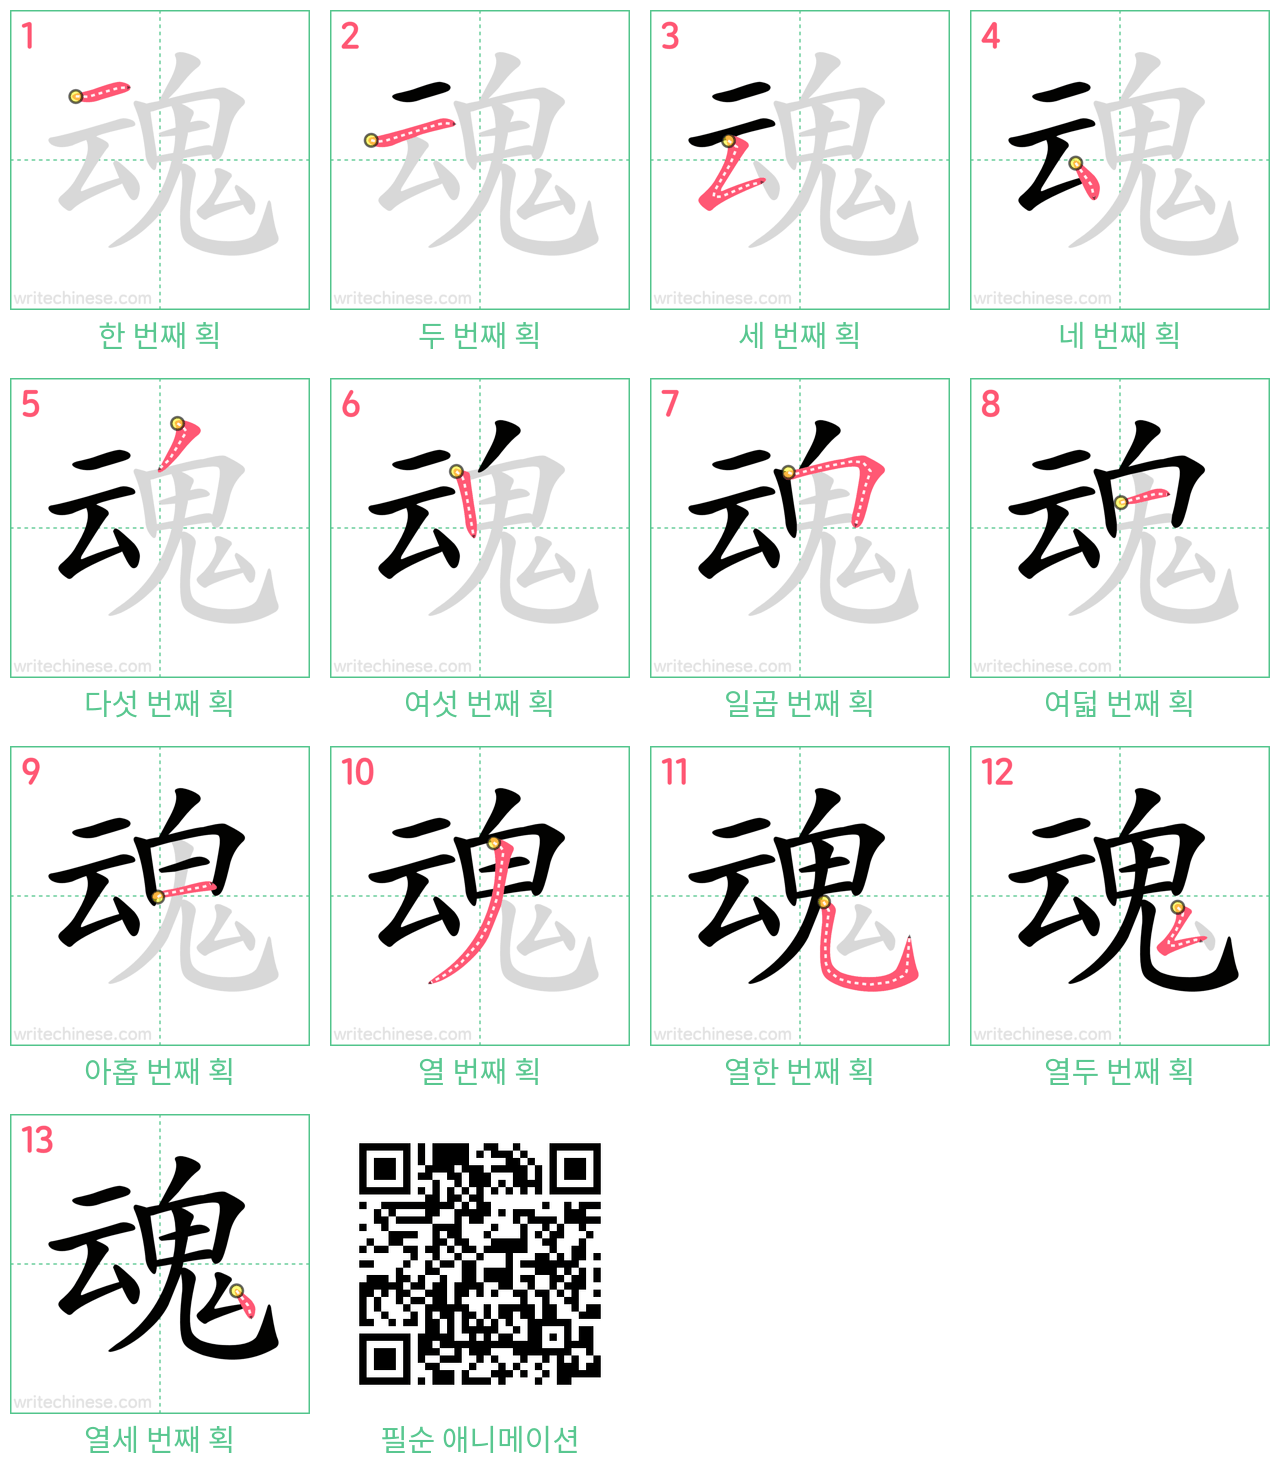 魂 step-by-step stroke order diagrams